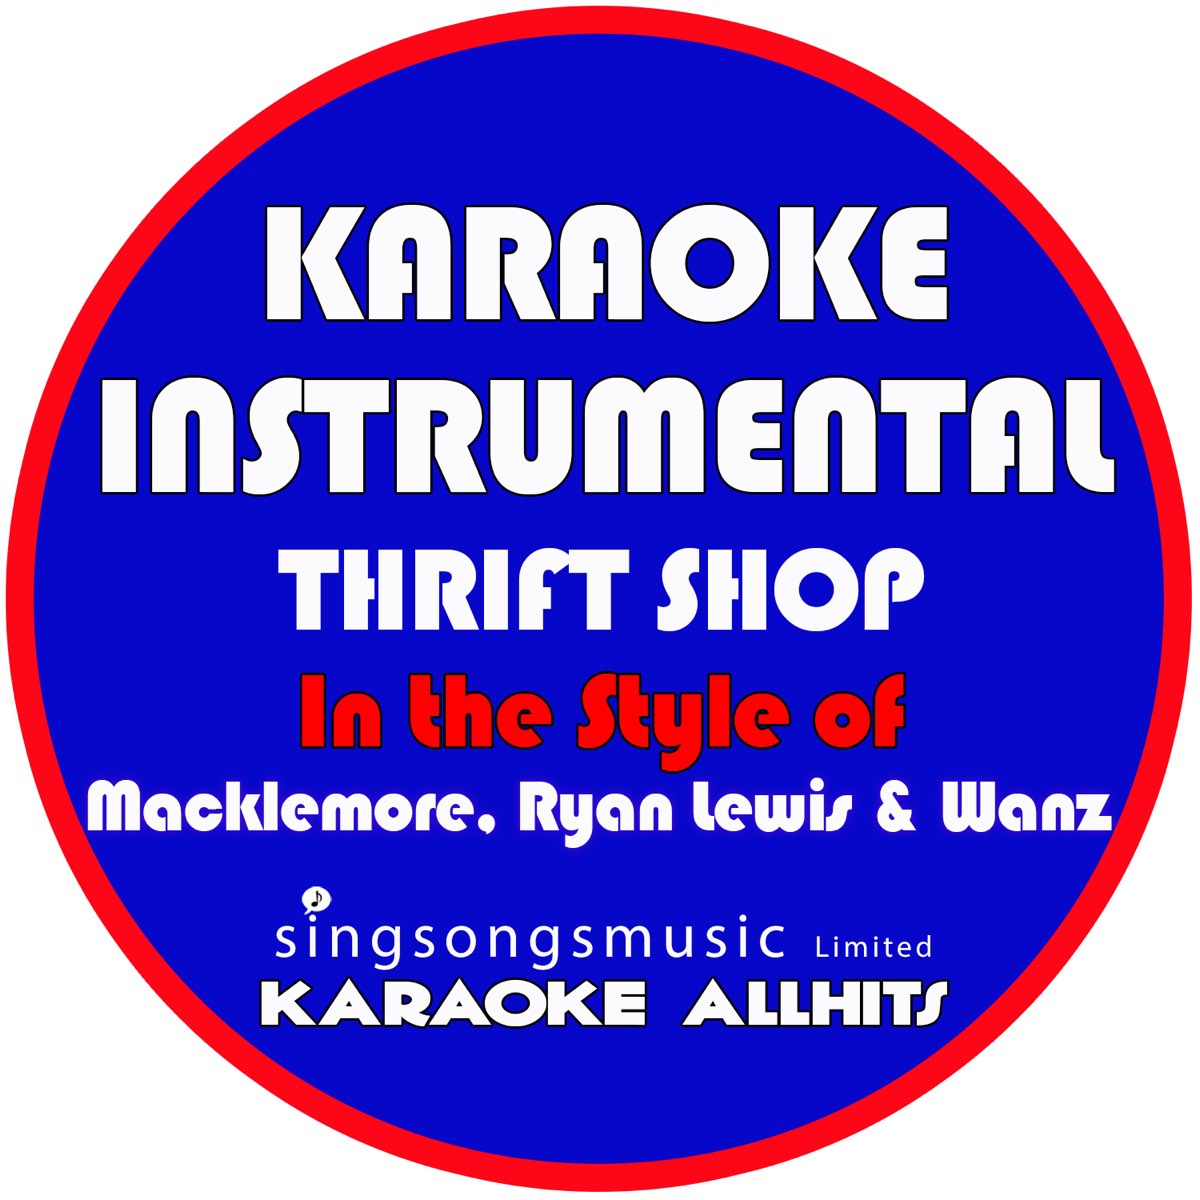 Thrift shop — Macklemore & Ryan Lewis featuring WANZ Sax Note. Thrift shop Branding. Shops thrift macklemore ryan